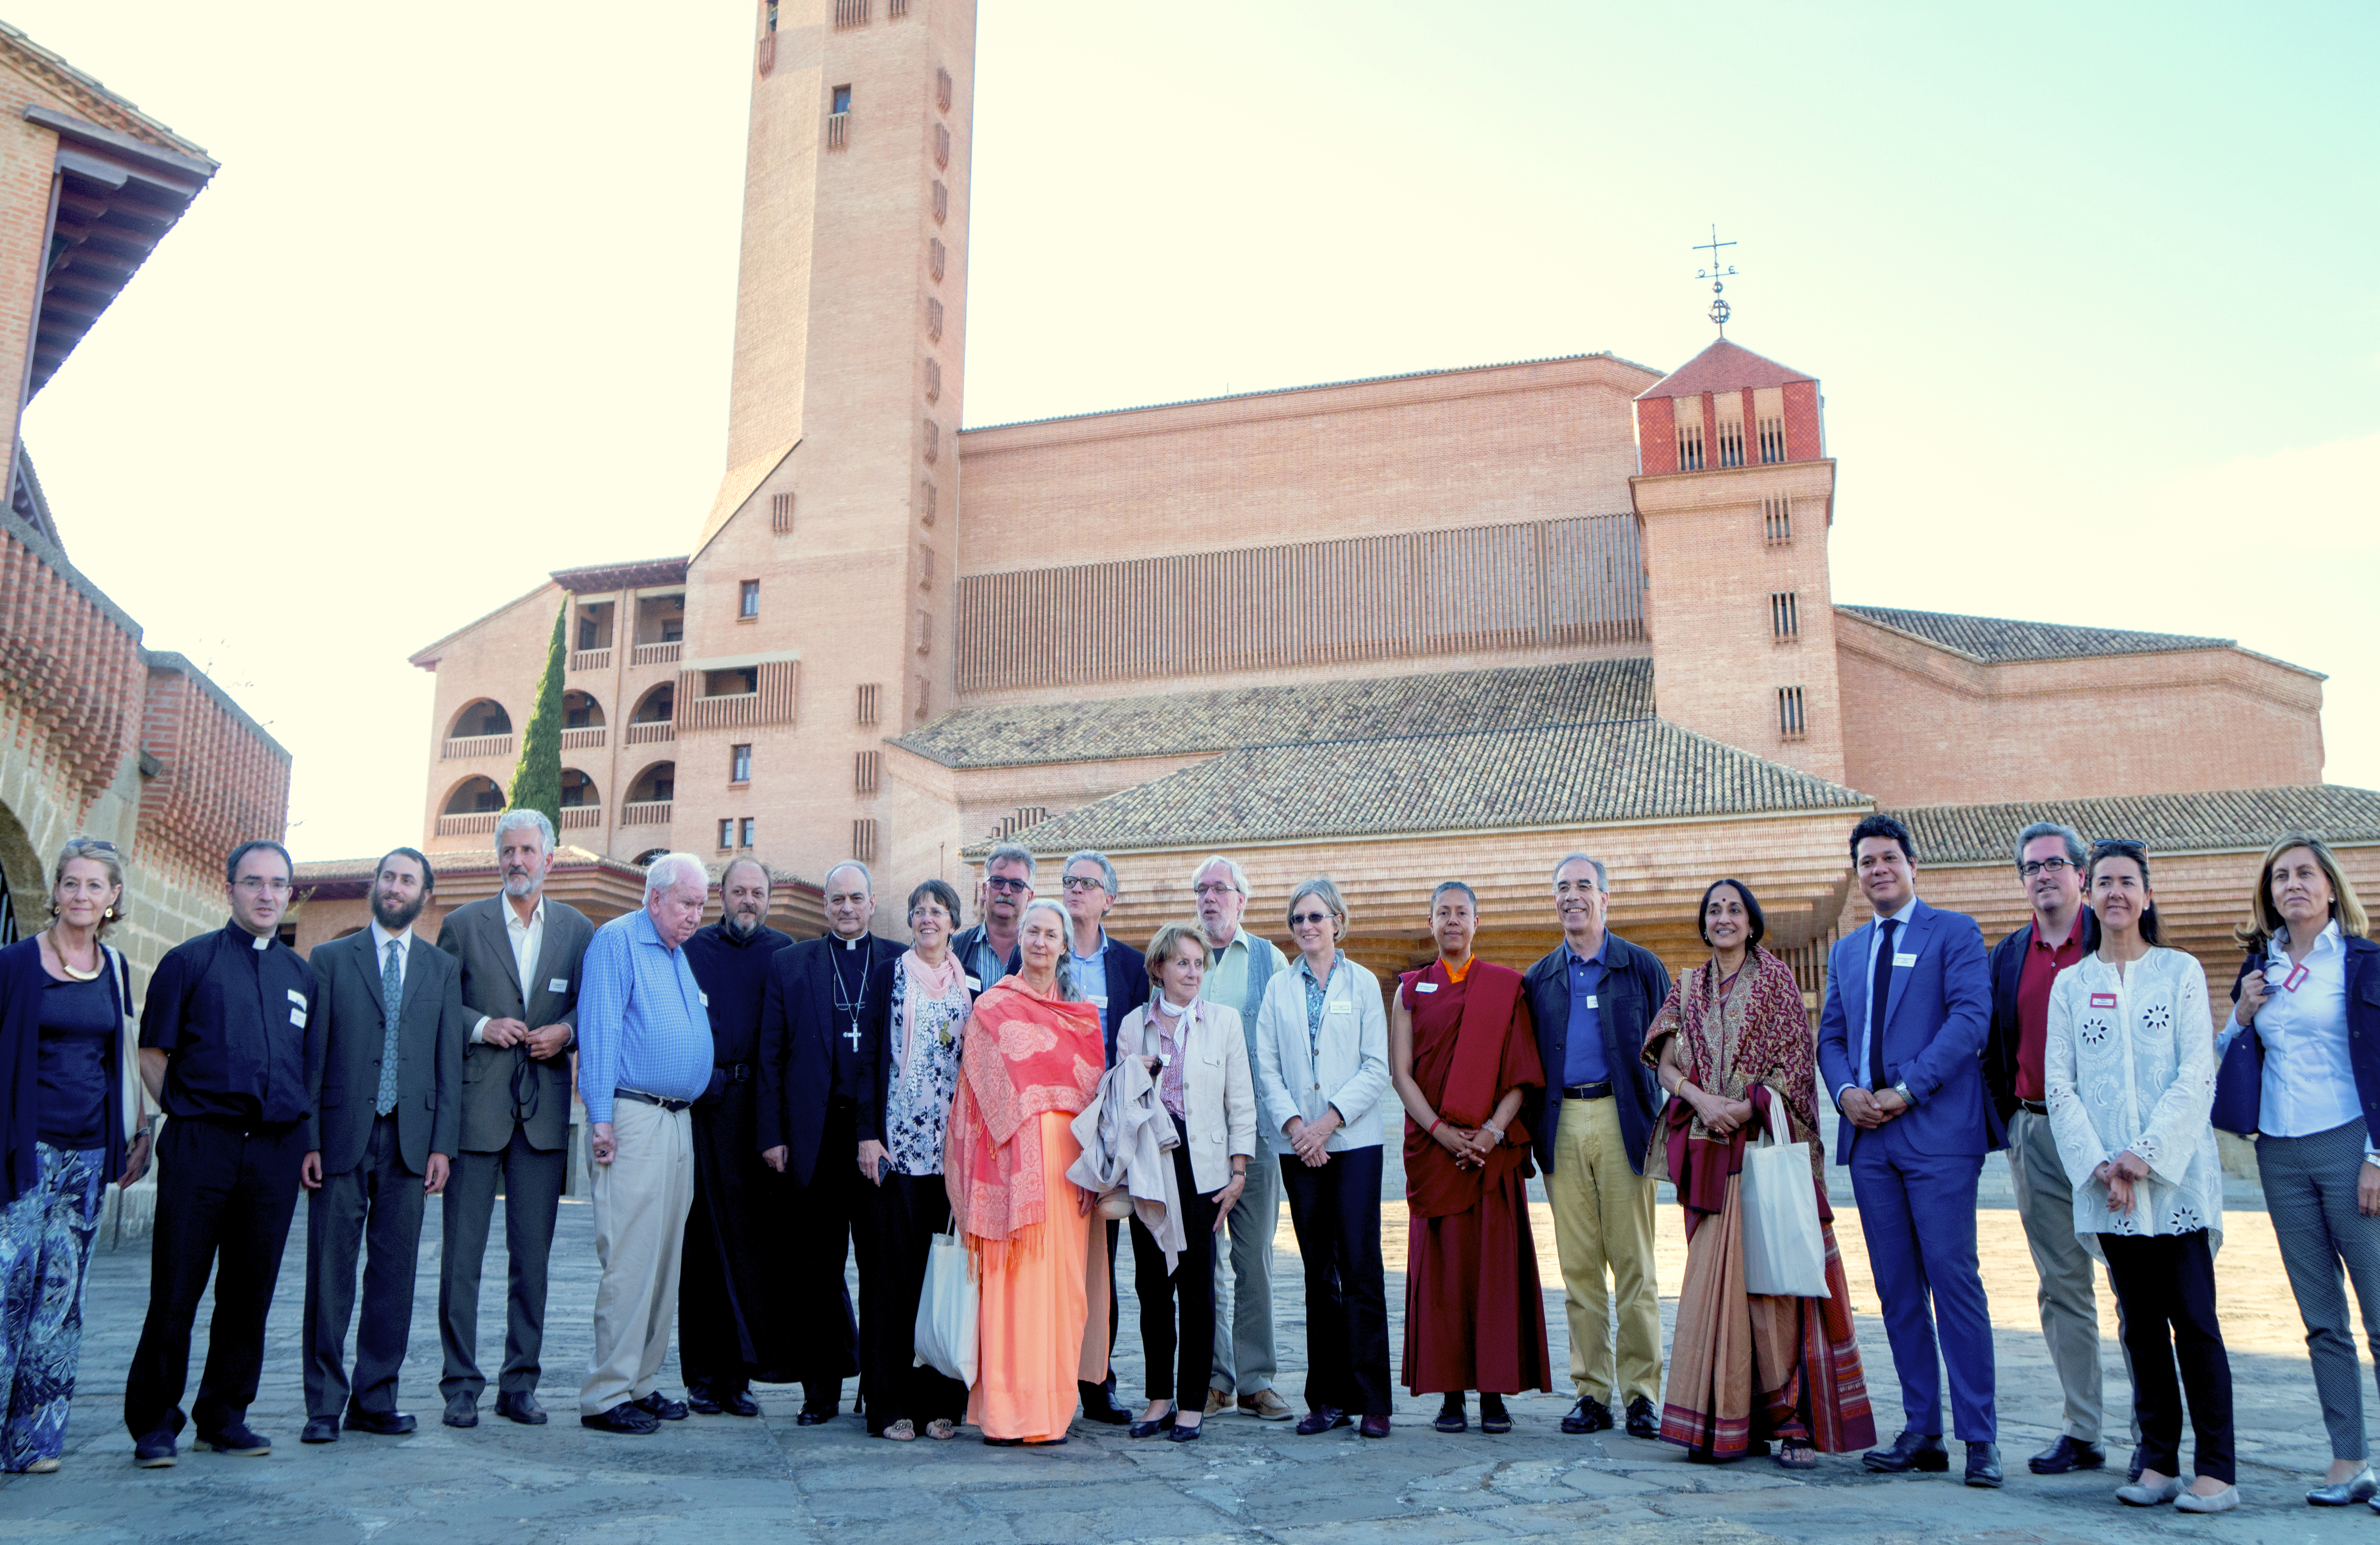 Los exponentes del congreso de científicos y líderes religiosos en Torreciudad (foto ©Torreciudad)